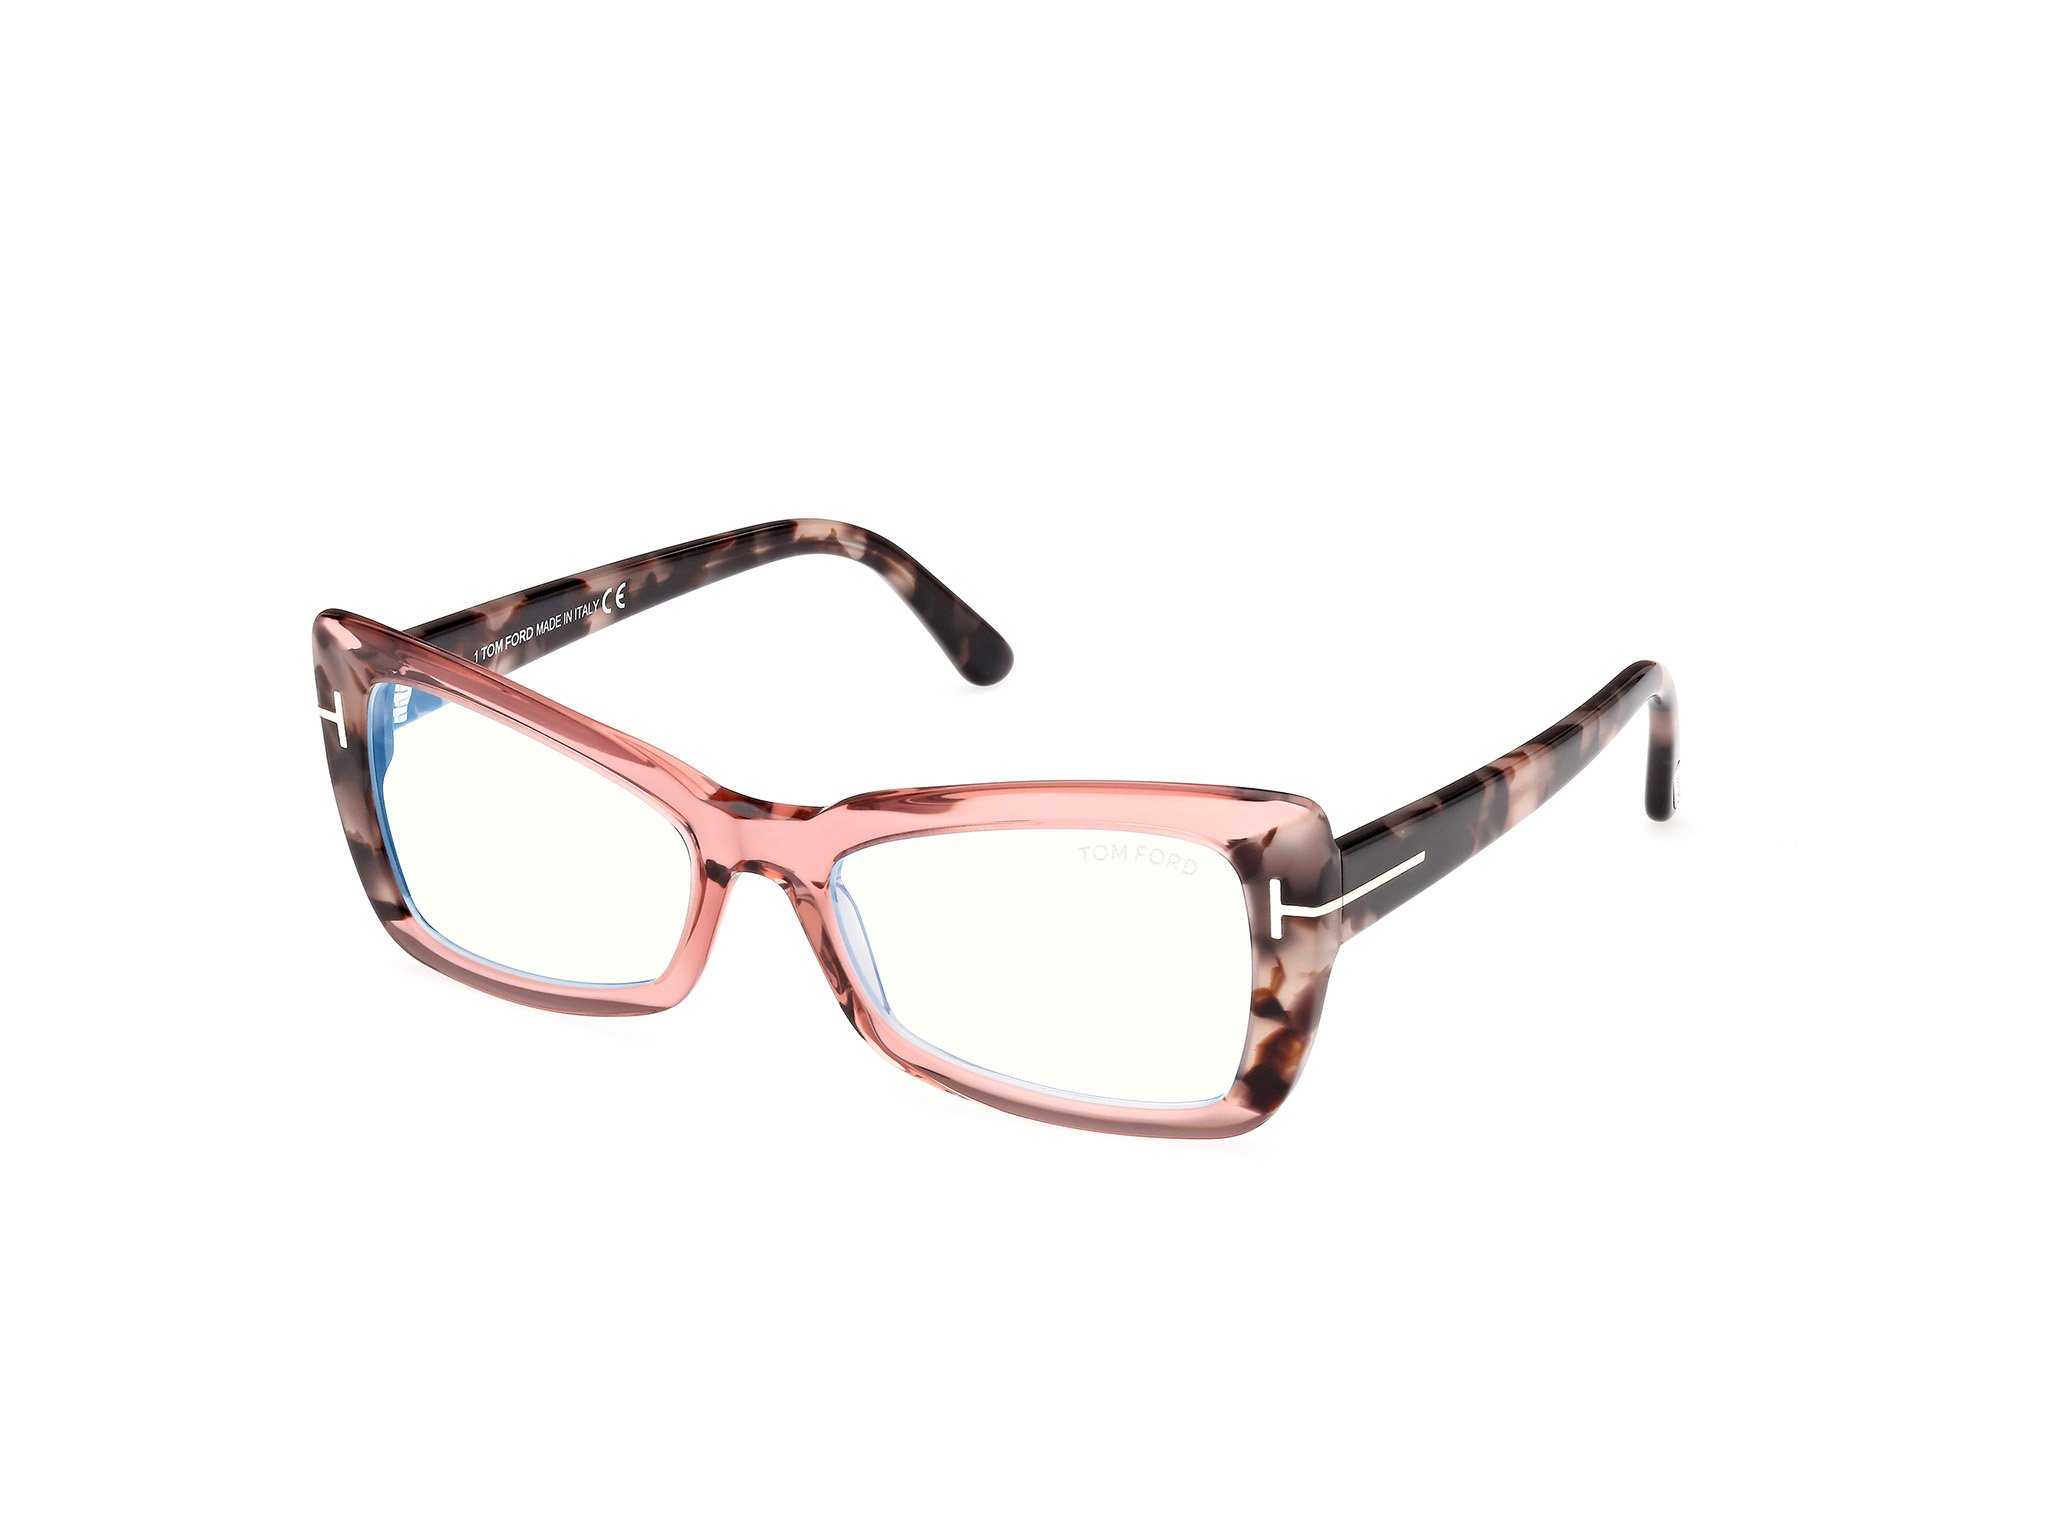 Das Bild zeigt die Korrektionsbrille FT5879-B 072 von der Marke Tom Ford in pink/havanna.